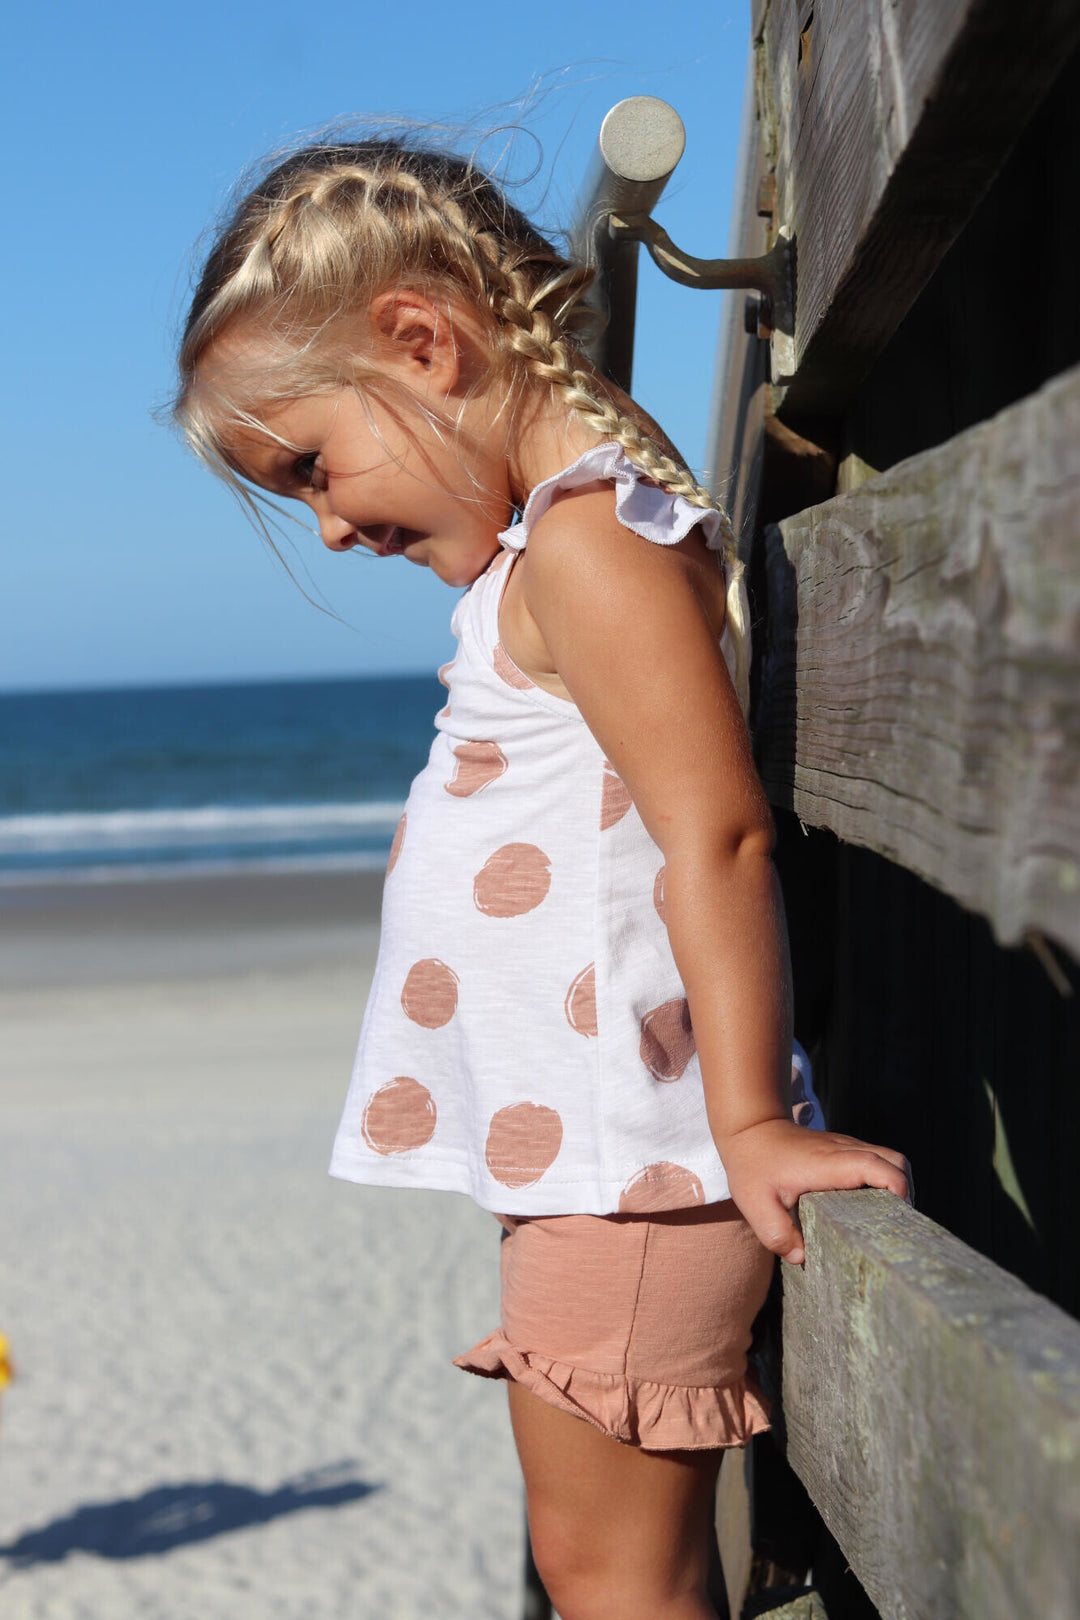 Child wearing Kids' Tank & Tap Short Set in Adobe Dot.